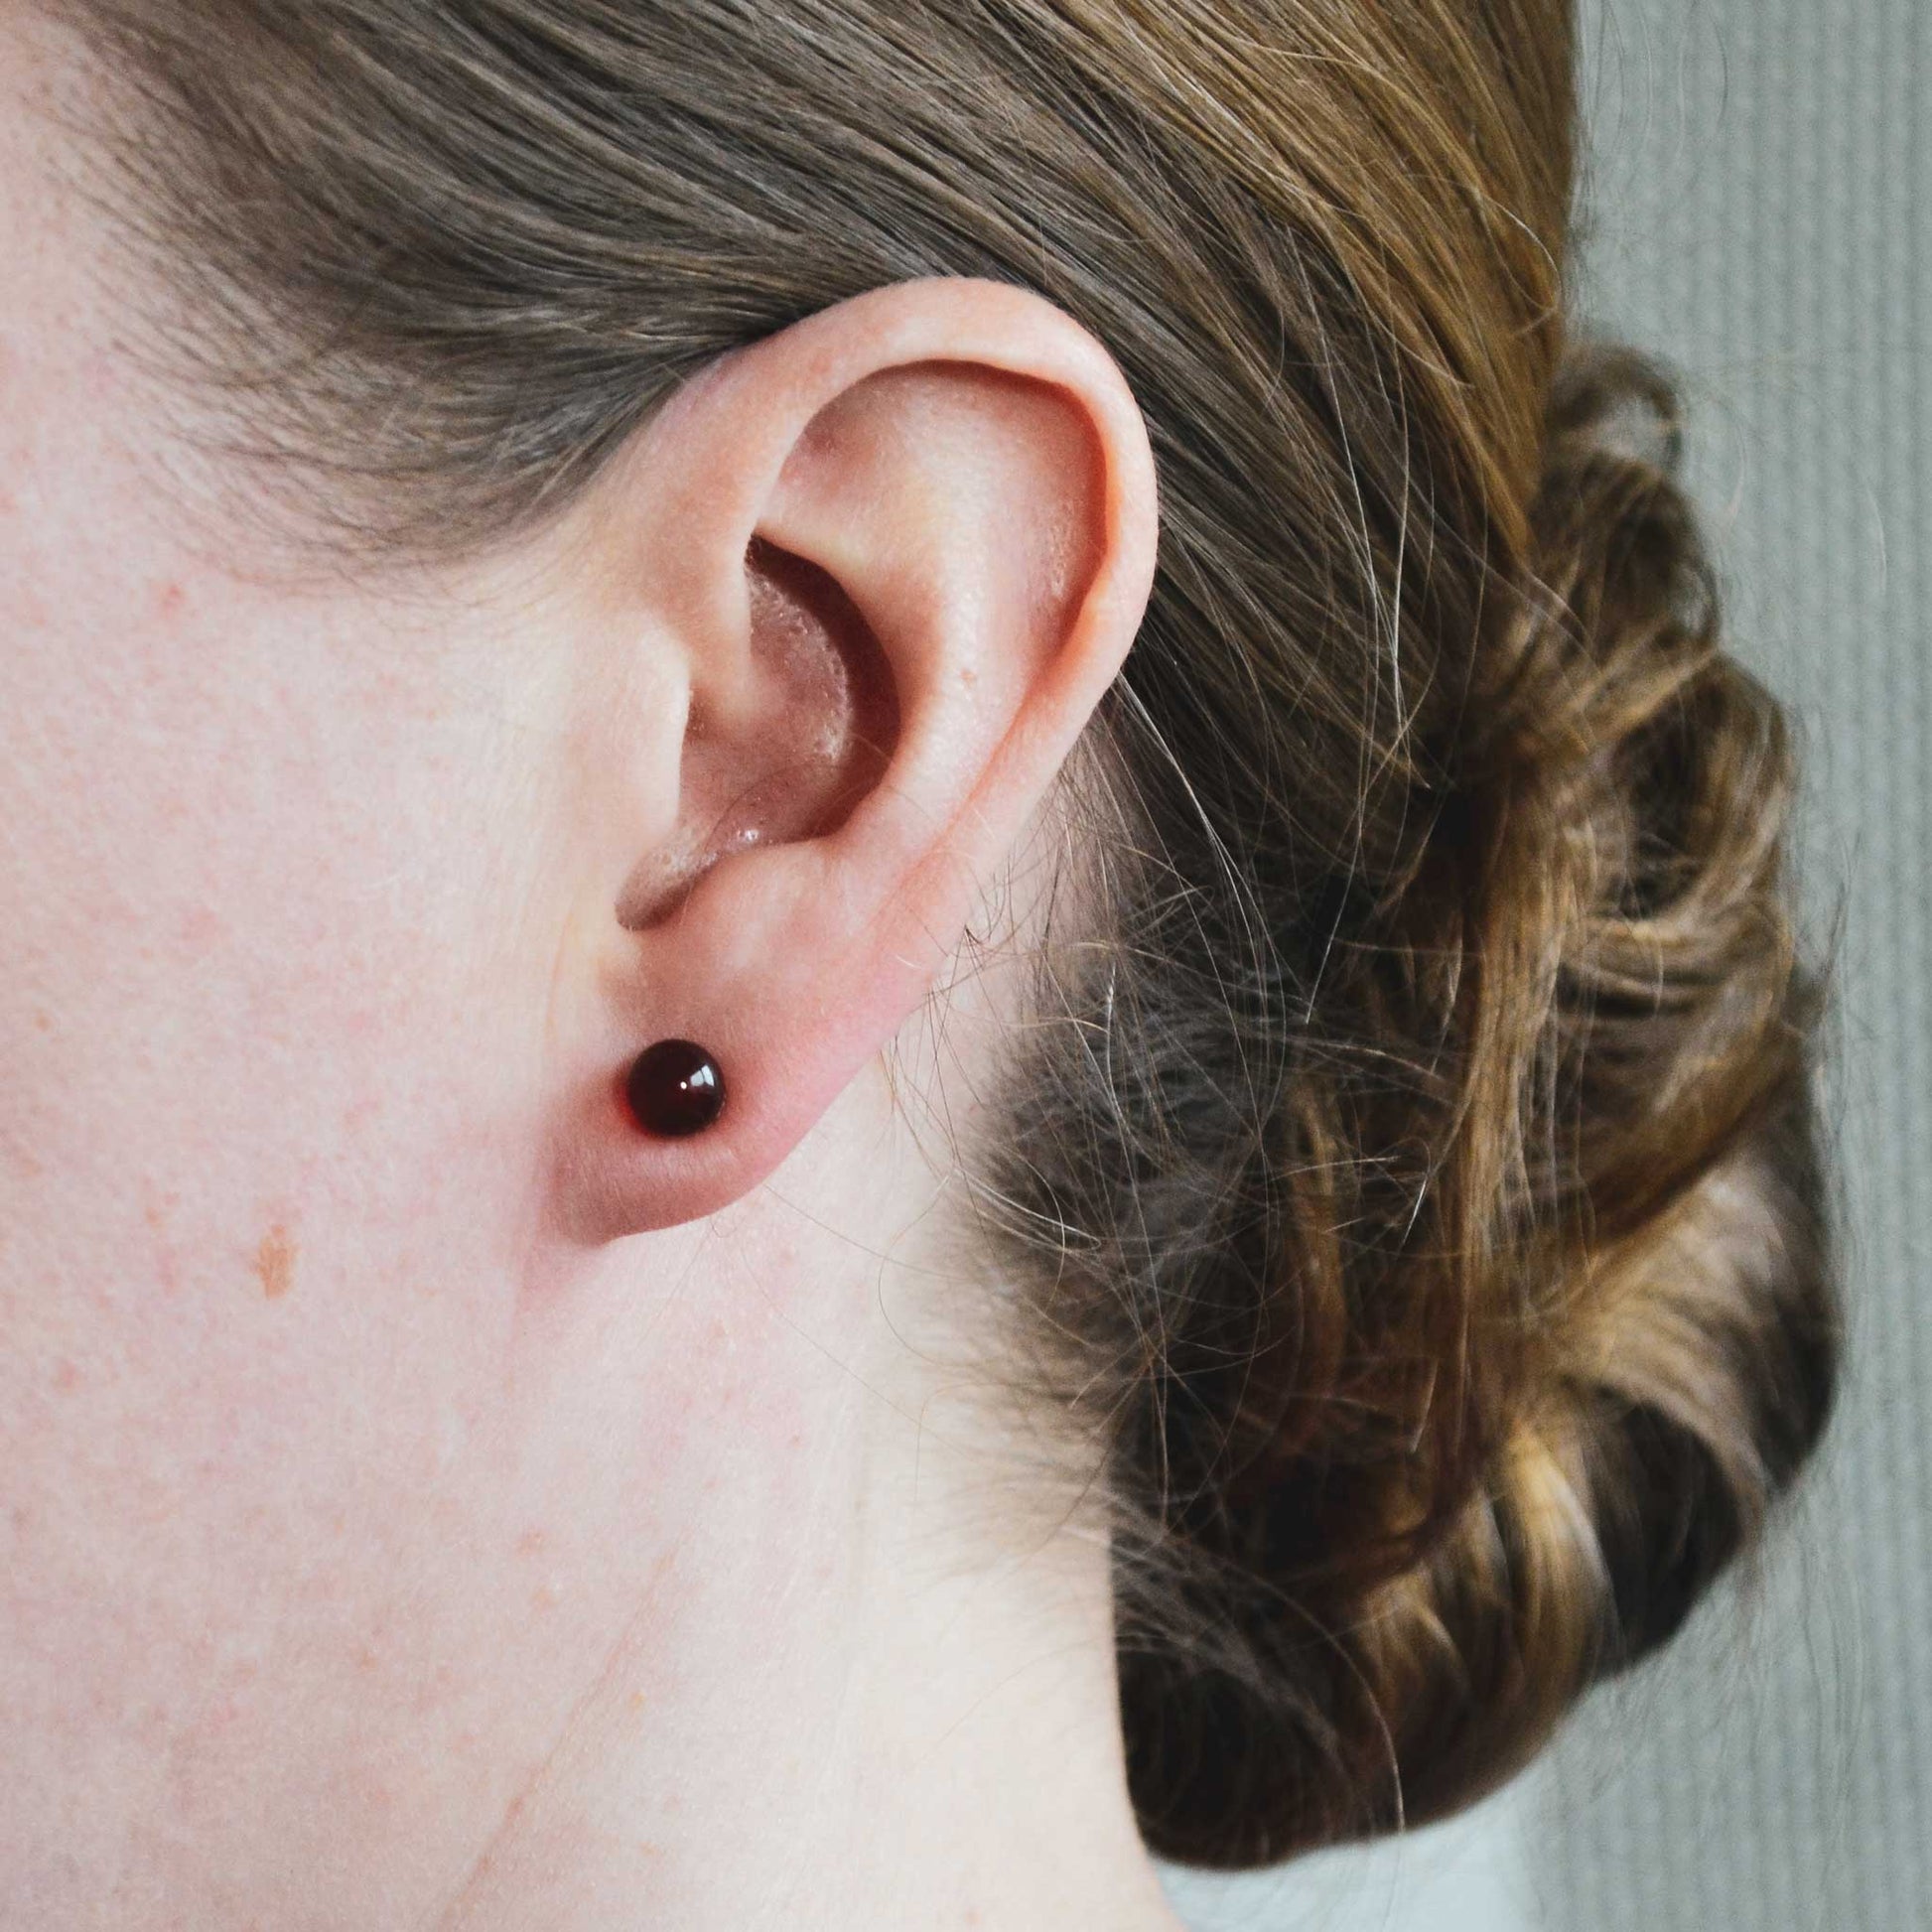 Woman wearing Carnelian stud earring in earlobe